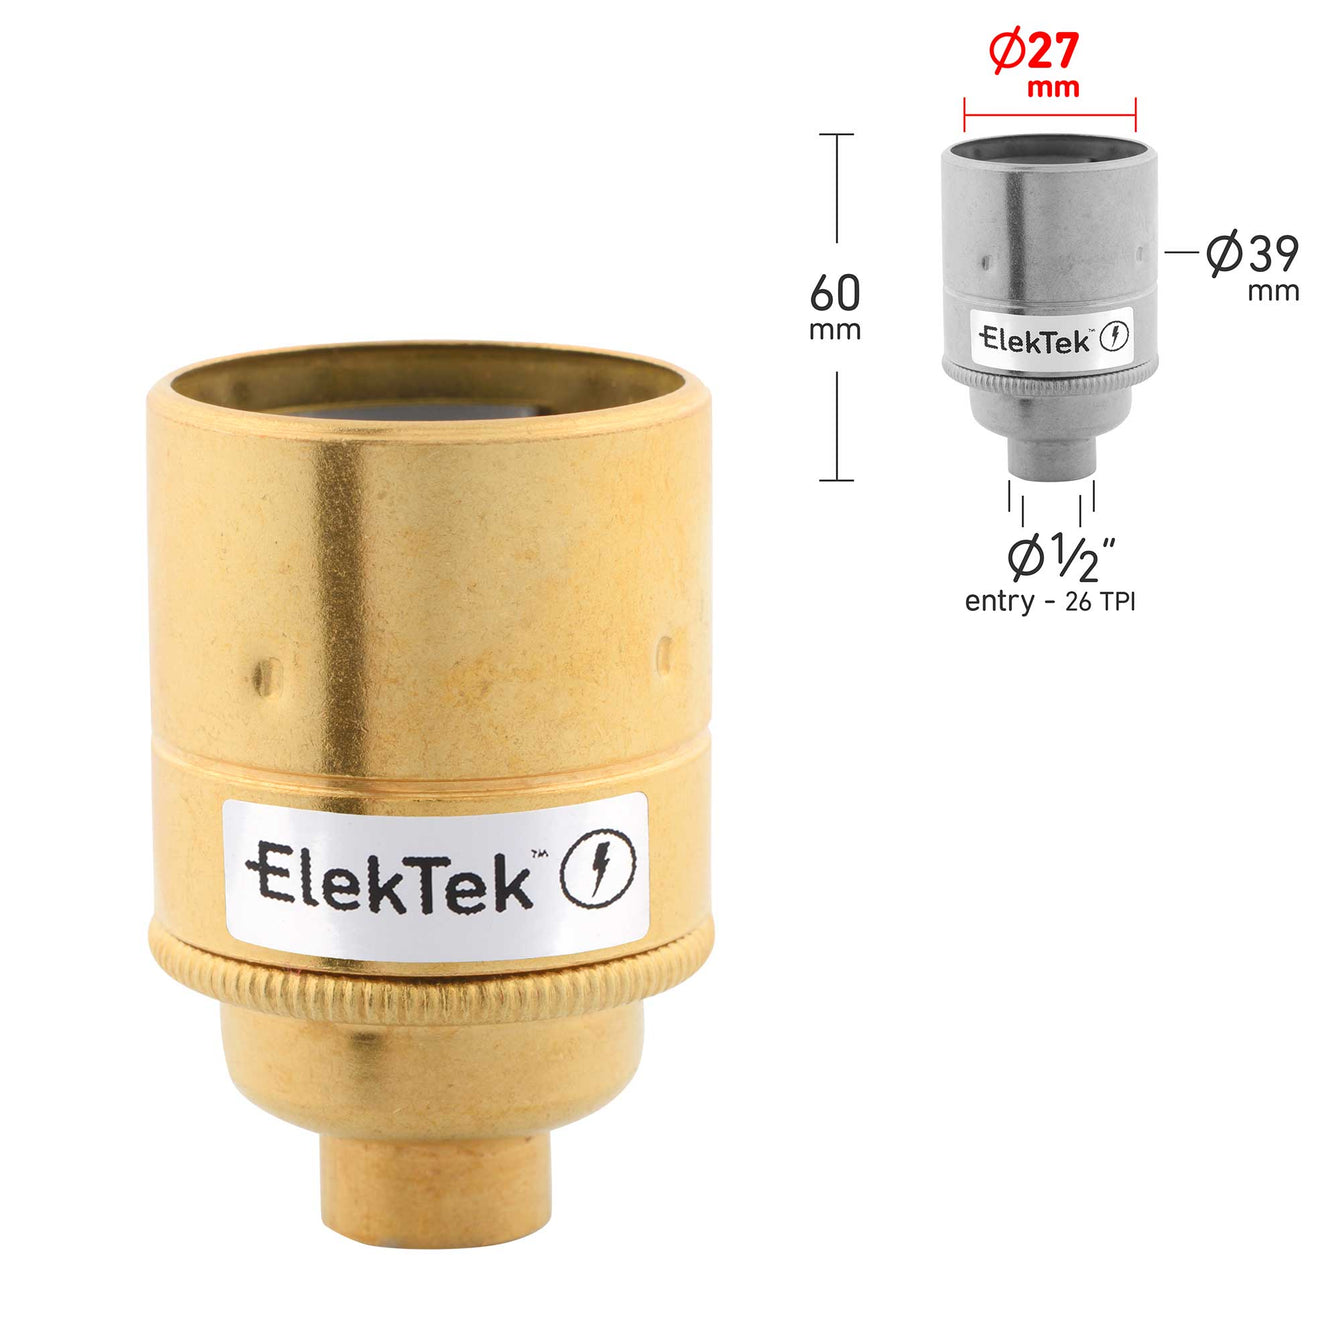 ElekTek ES Edison Screw E27 Lamp Holder Plain Skirt 10mm or Half Inch Entry Ideal for Vintage Filament Bulbs Brass - Buy It Better Brilliant White / Half Inch